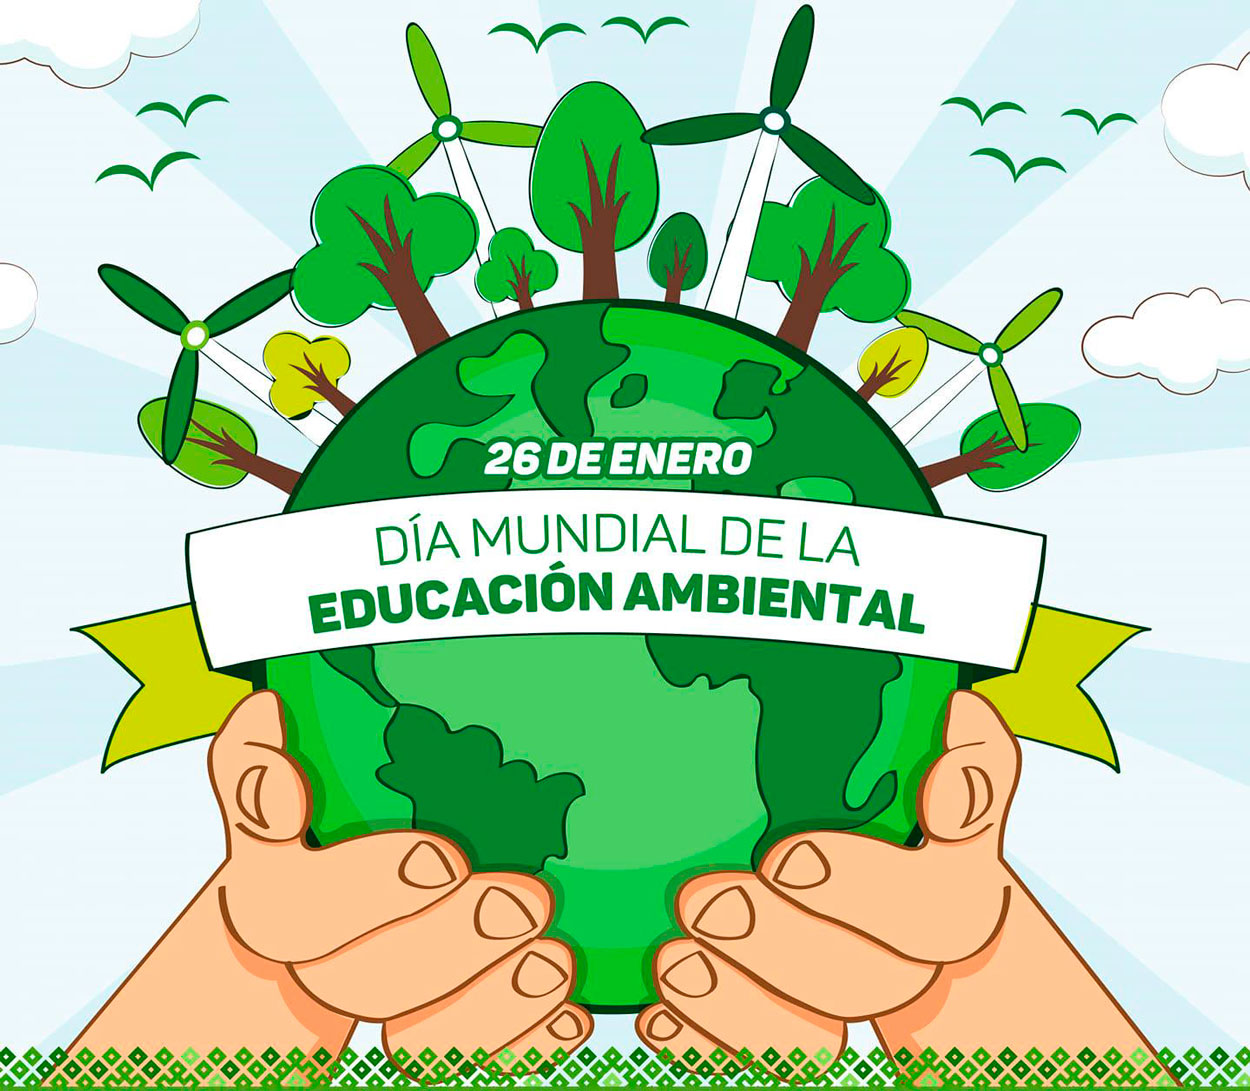 26 de enero - Día mundial de la educación ambiental